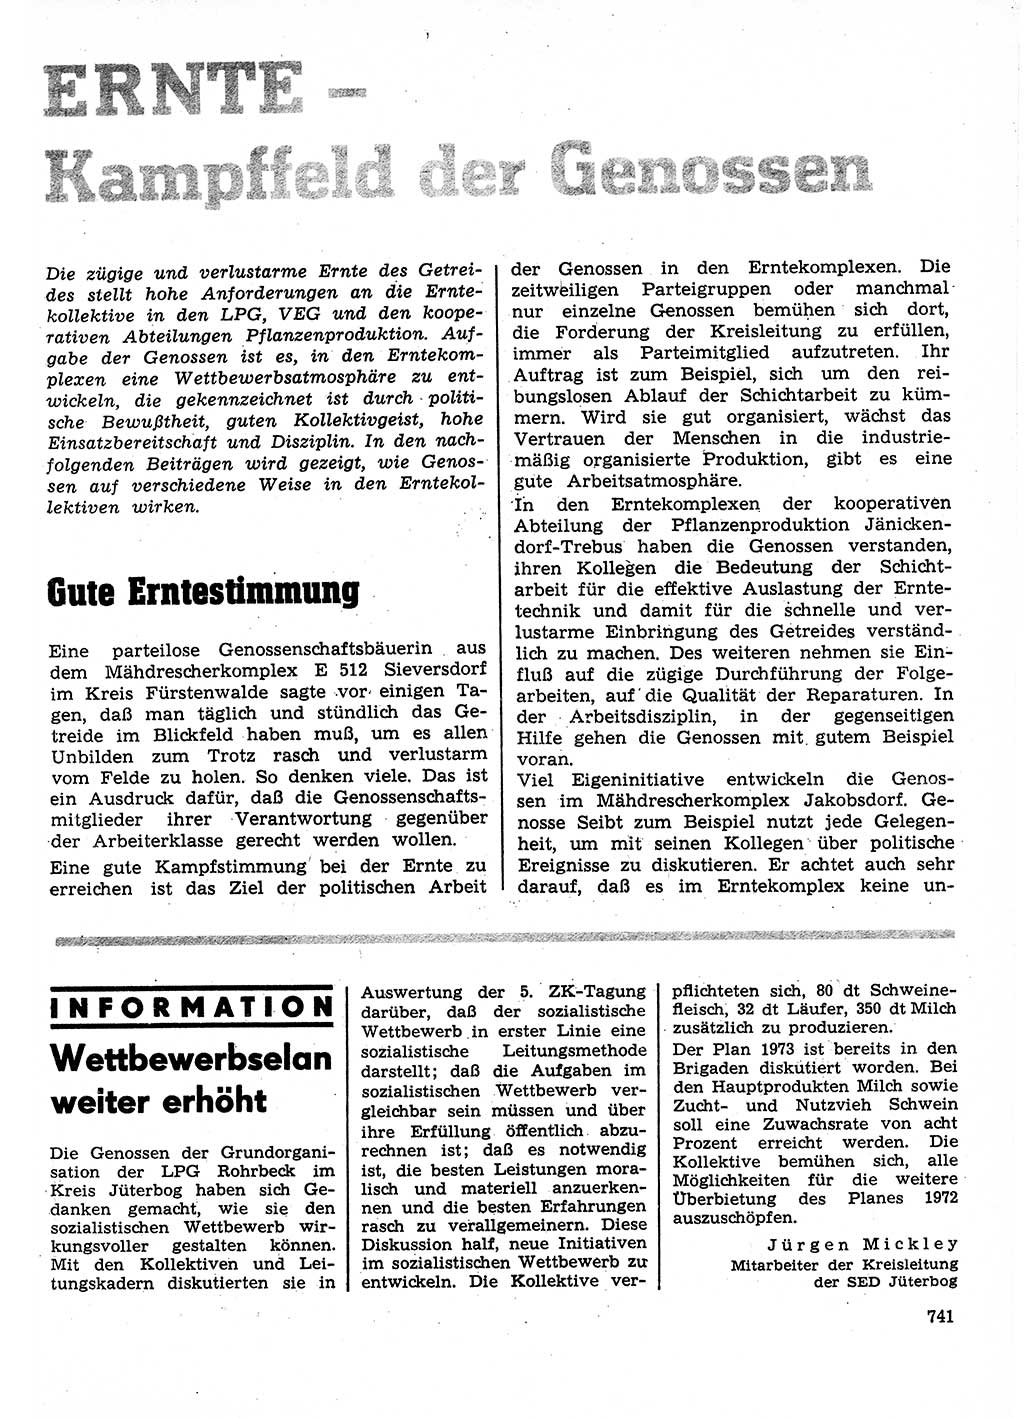 Neuer Weg (NW), Organ des Zentralkomitees (ZK) der SED (Sozialistische Einheitspartei Deutschlands) für Fragen des Parteilebens, 27. Jahrgang [Deutsche Demokratische Republik (DDR)] 1972, Seite 741 (NW ZK SED DDR 1972, S. 741)